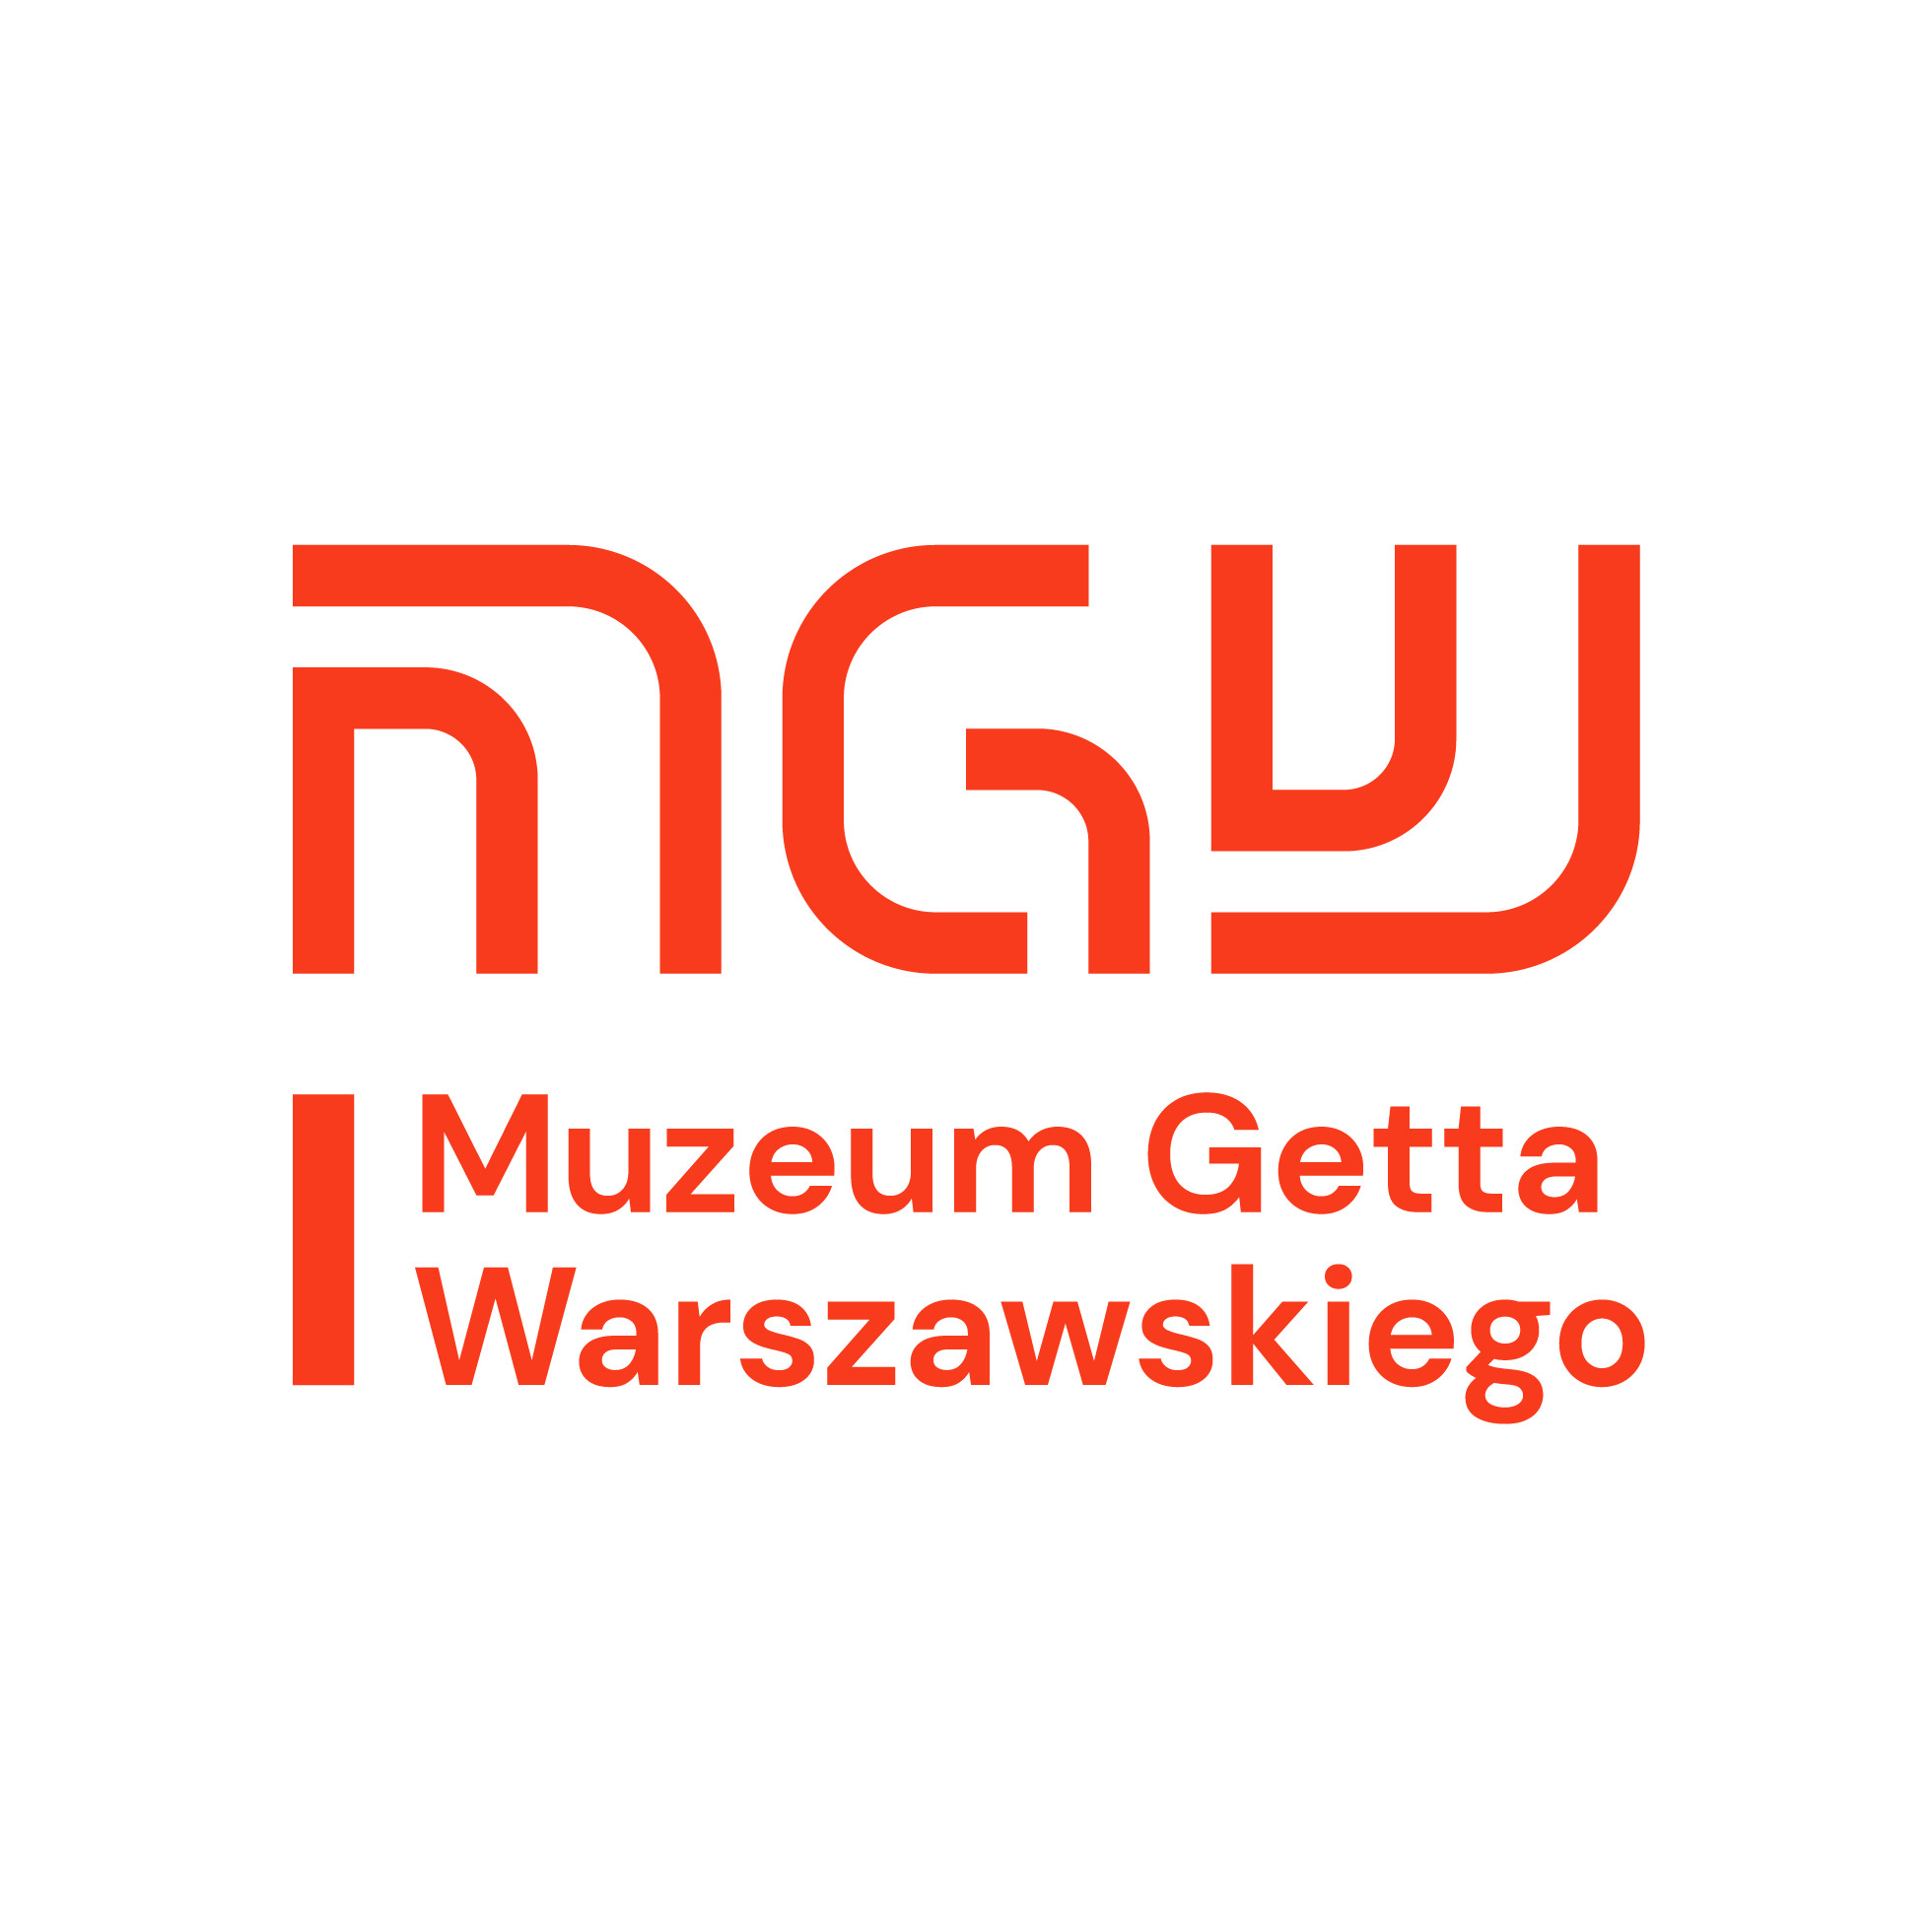 Warsaw Ghetto Museum